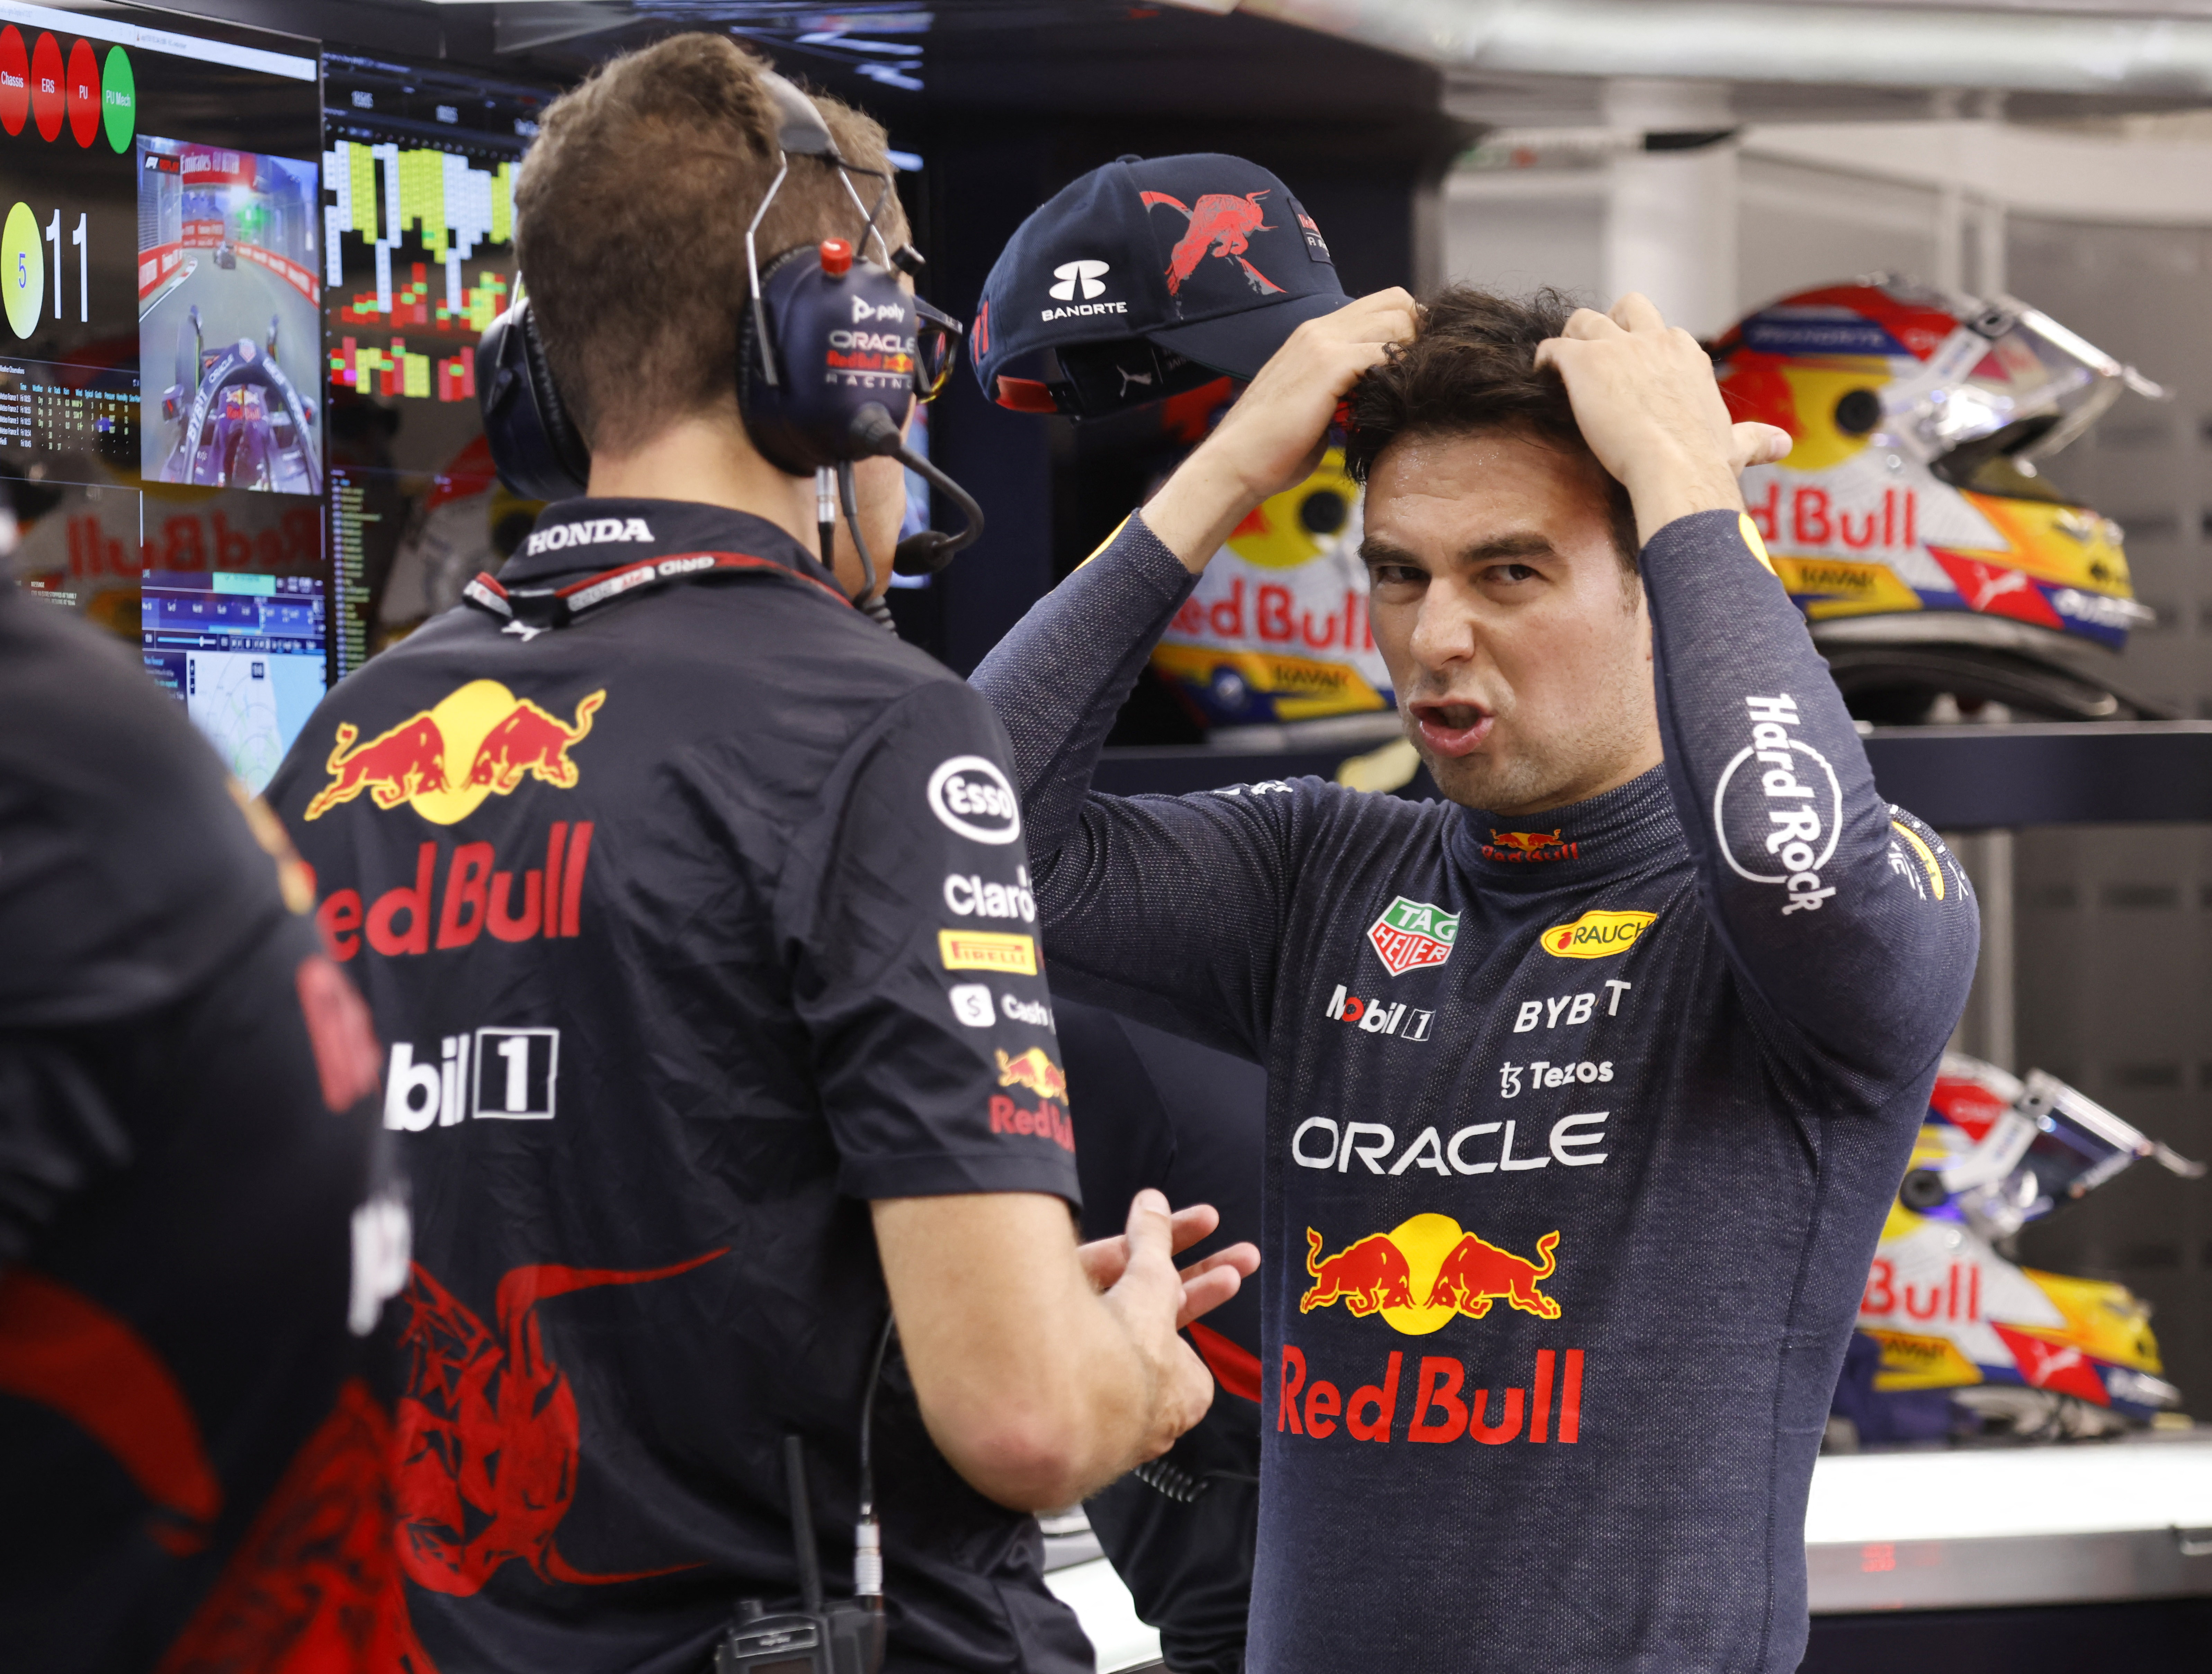 Con problemas en el RB18: así fue el primer día de Checo Pérez en el GP de Singapur. Foto: REUTERS/Edgar Su